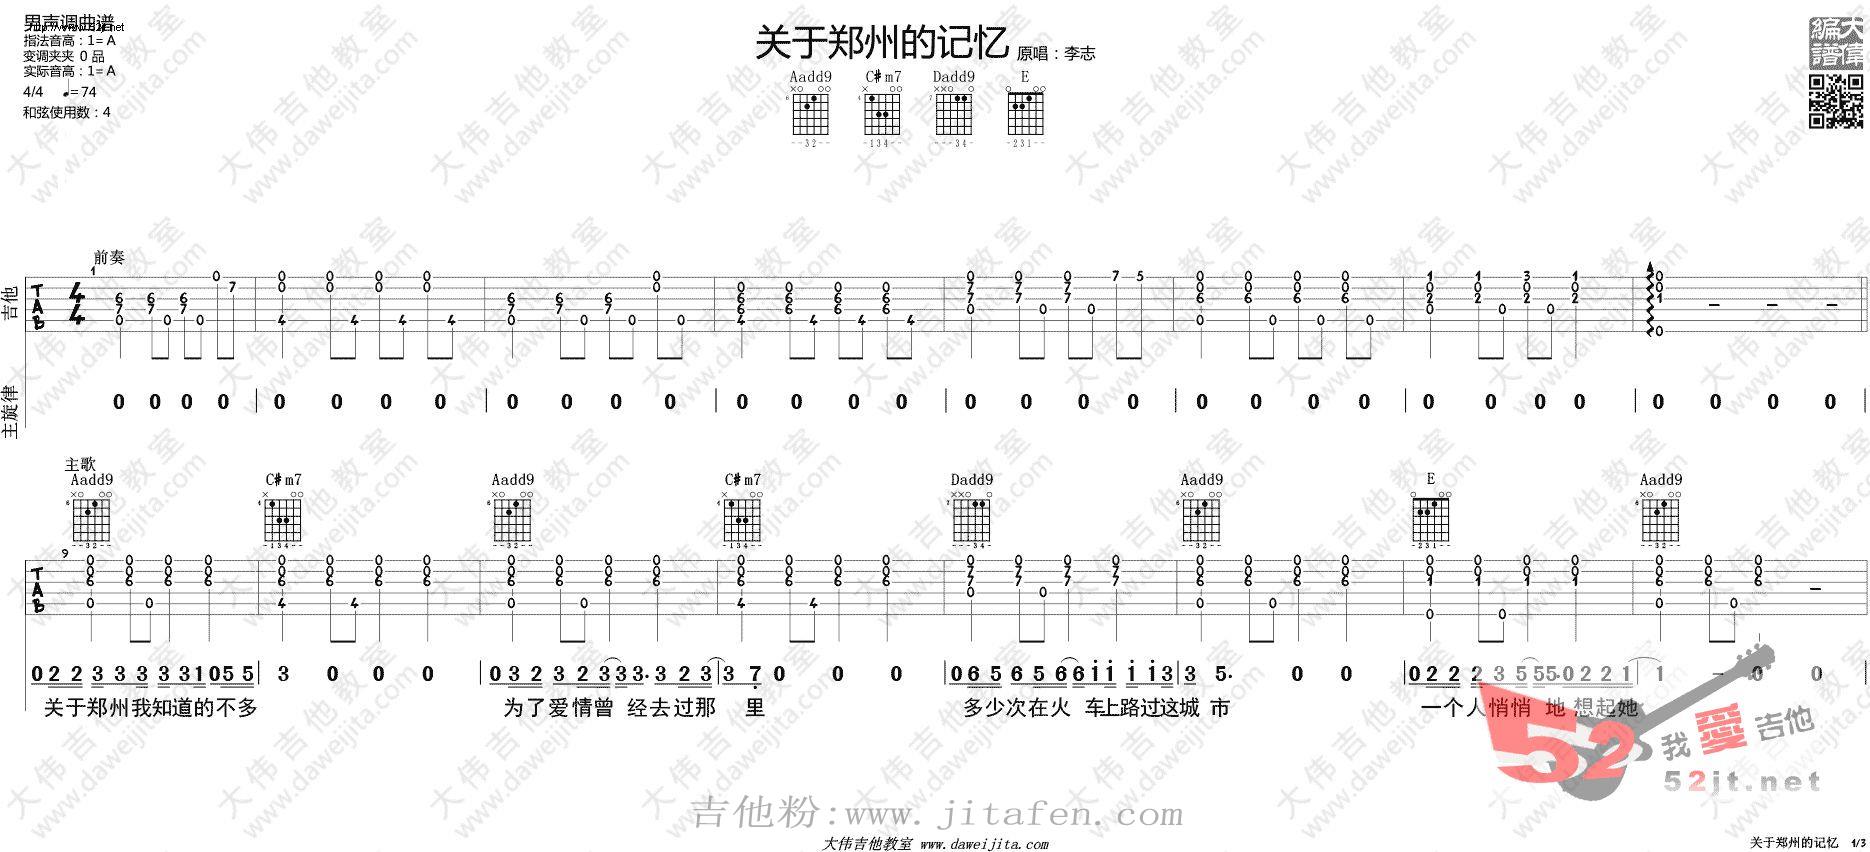 关于郑州的记忆 吉他谱